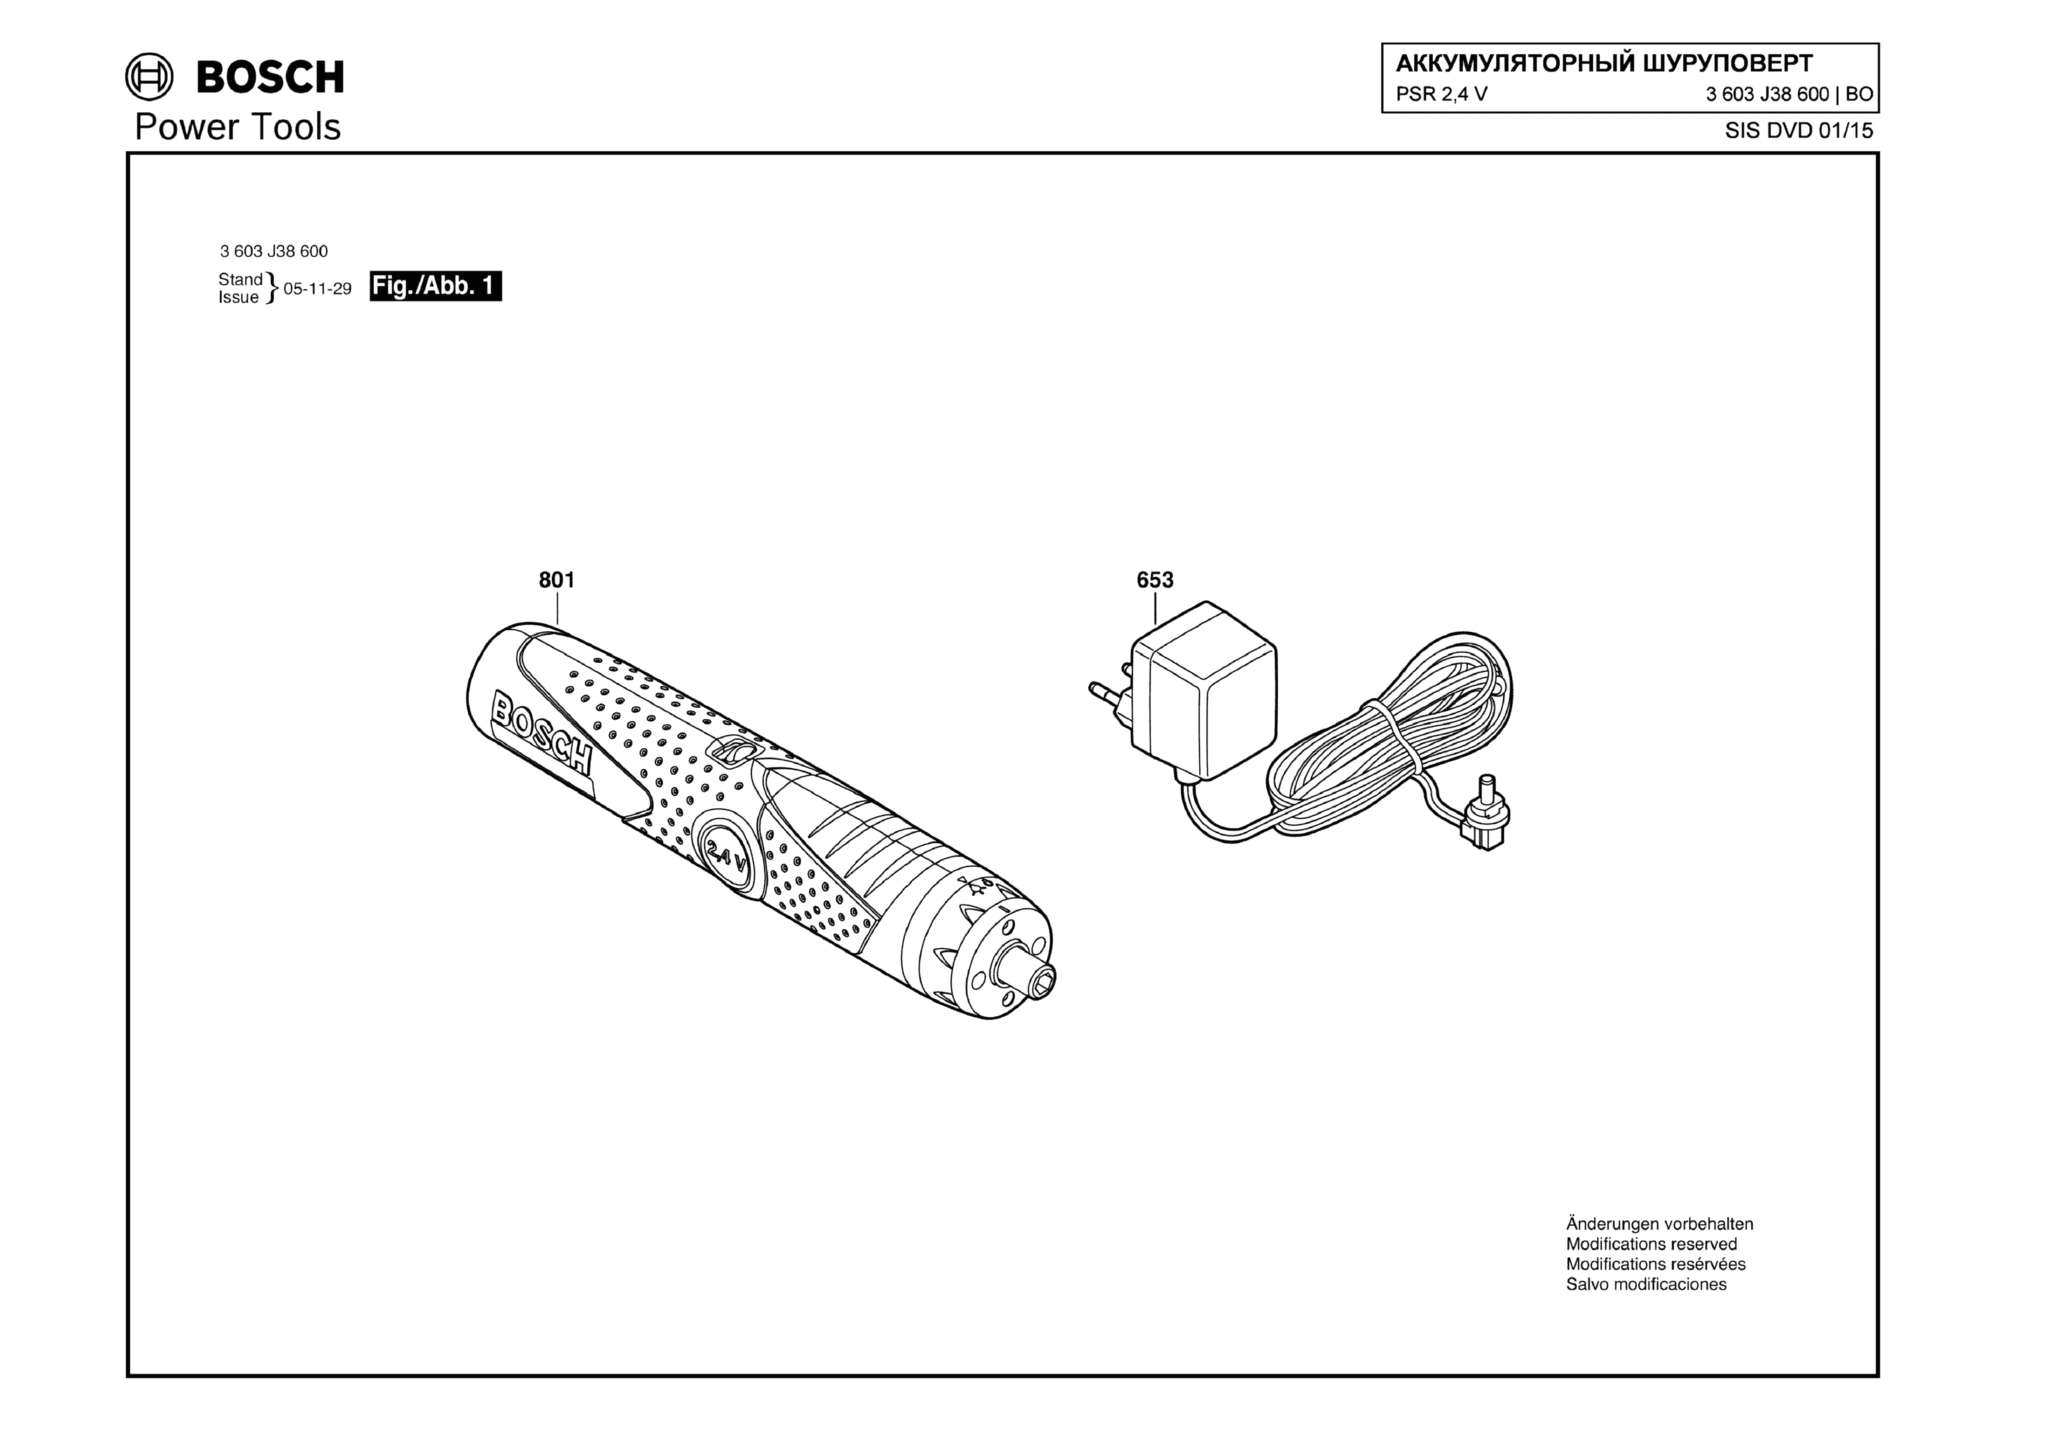 Запчасти, схема и деталировка Bosch PSR 2,4 V (ТИП 3603J38600)